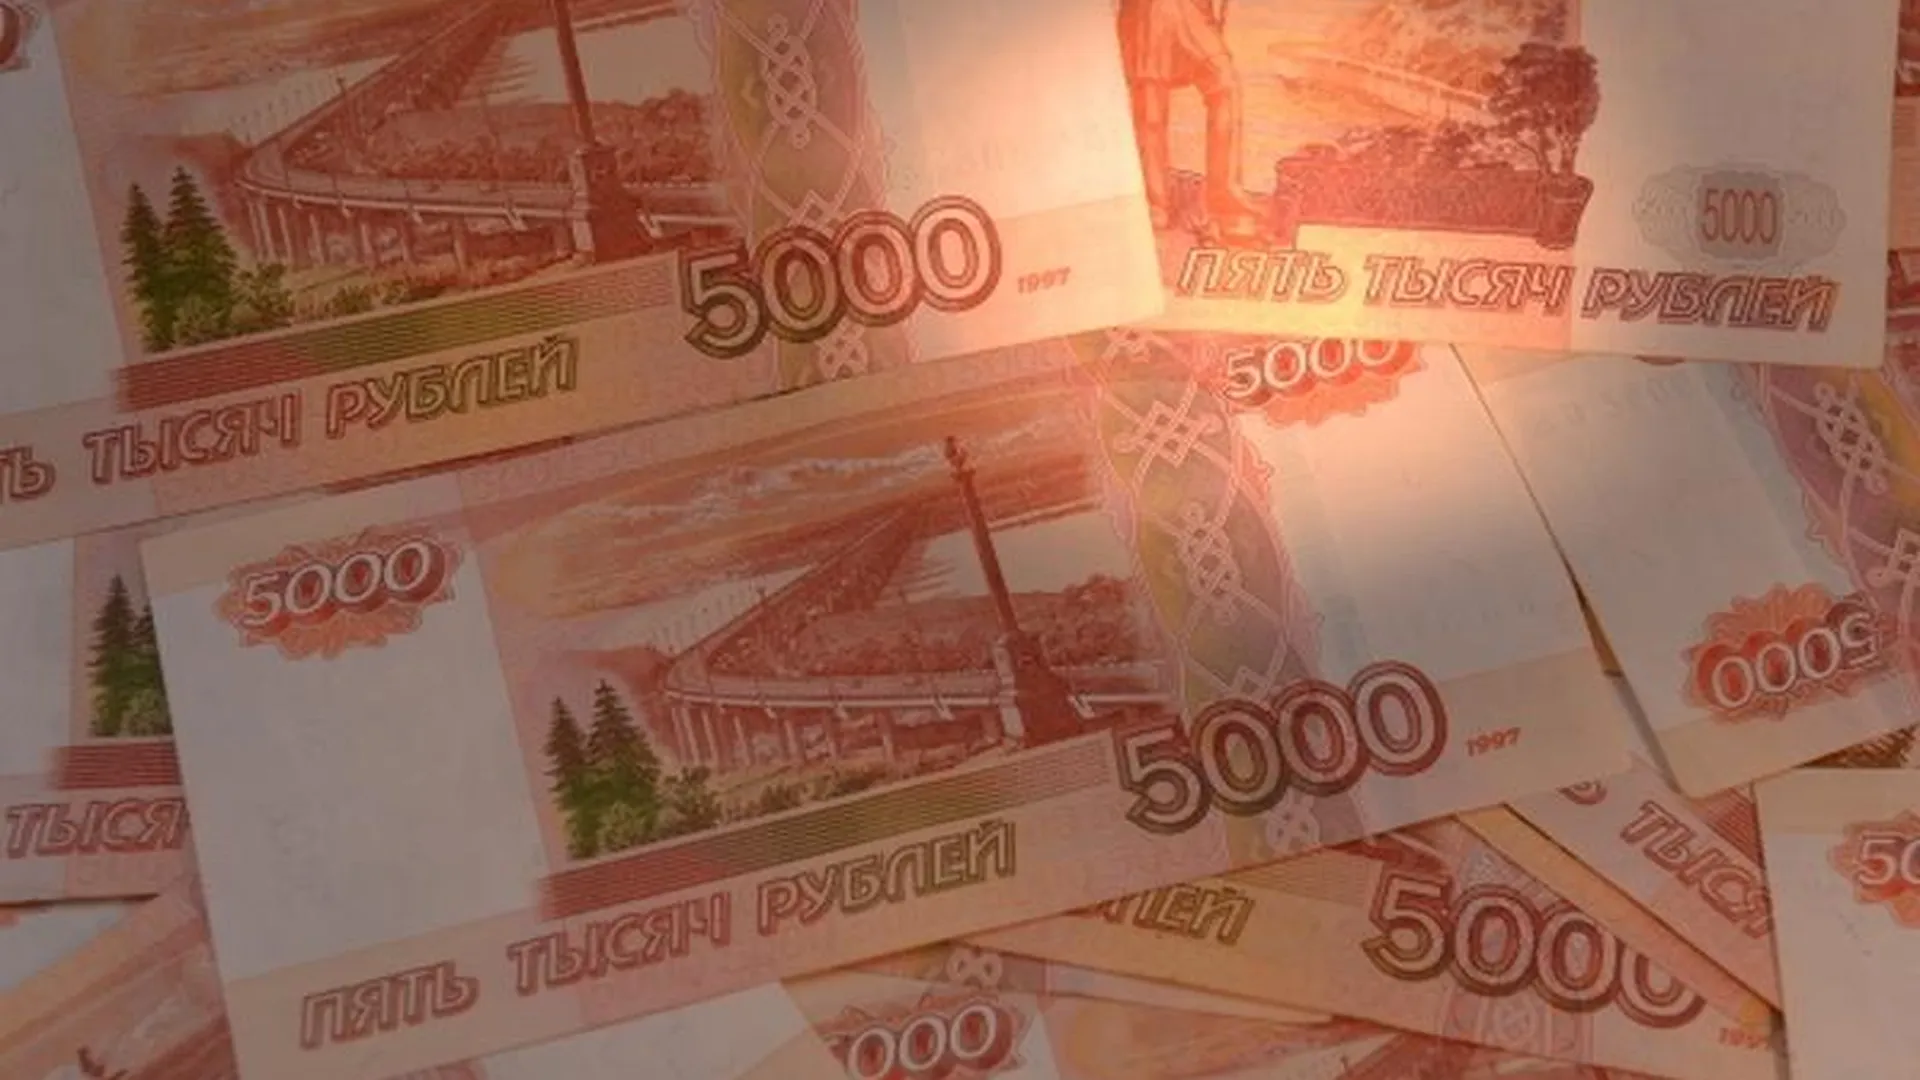 Восьми миллионов рублей лишился безработный москвич из-за налета бандитов